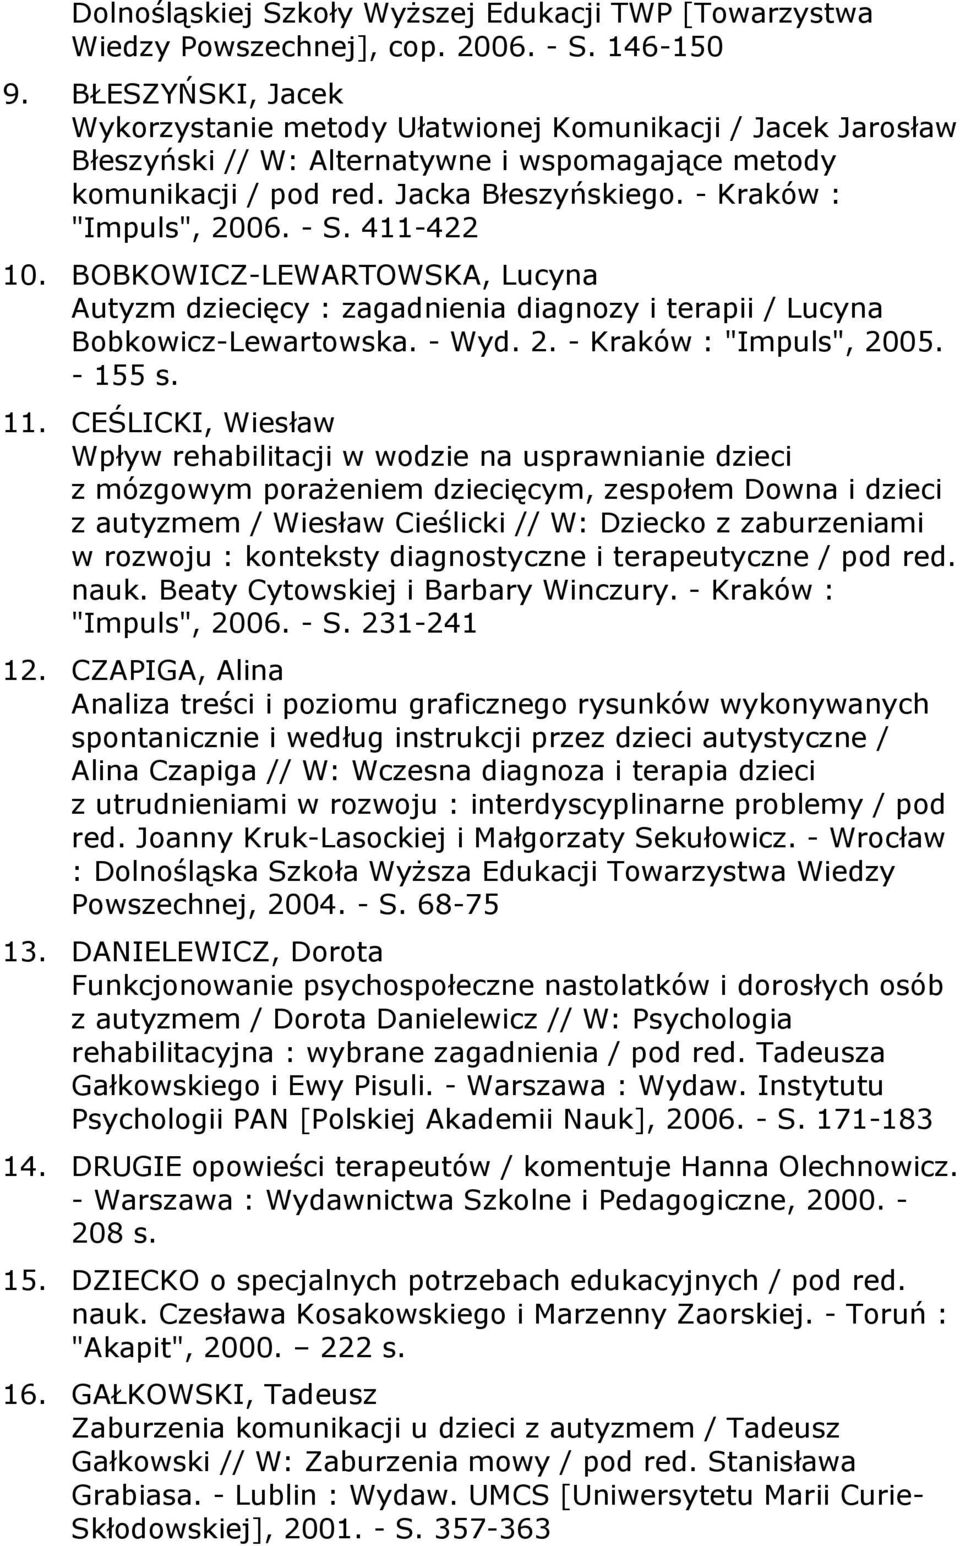 - Kraków : "Impuls", 2006. - S. 411-422 10. BOBKOWICZ-LEWARTOWSKA, Lucyna Autyzm dziecięcy : zagadnienia diagnozy i terapii / Lucyna Bobkowicz-Lewartowska. - Wyd. 2. - Kraków : "Impuls", 2005.